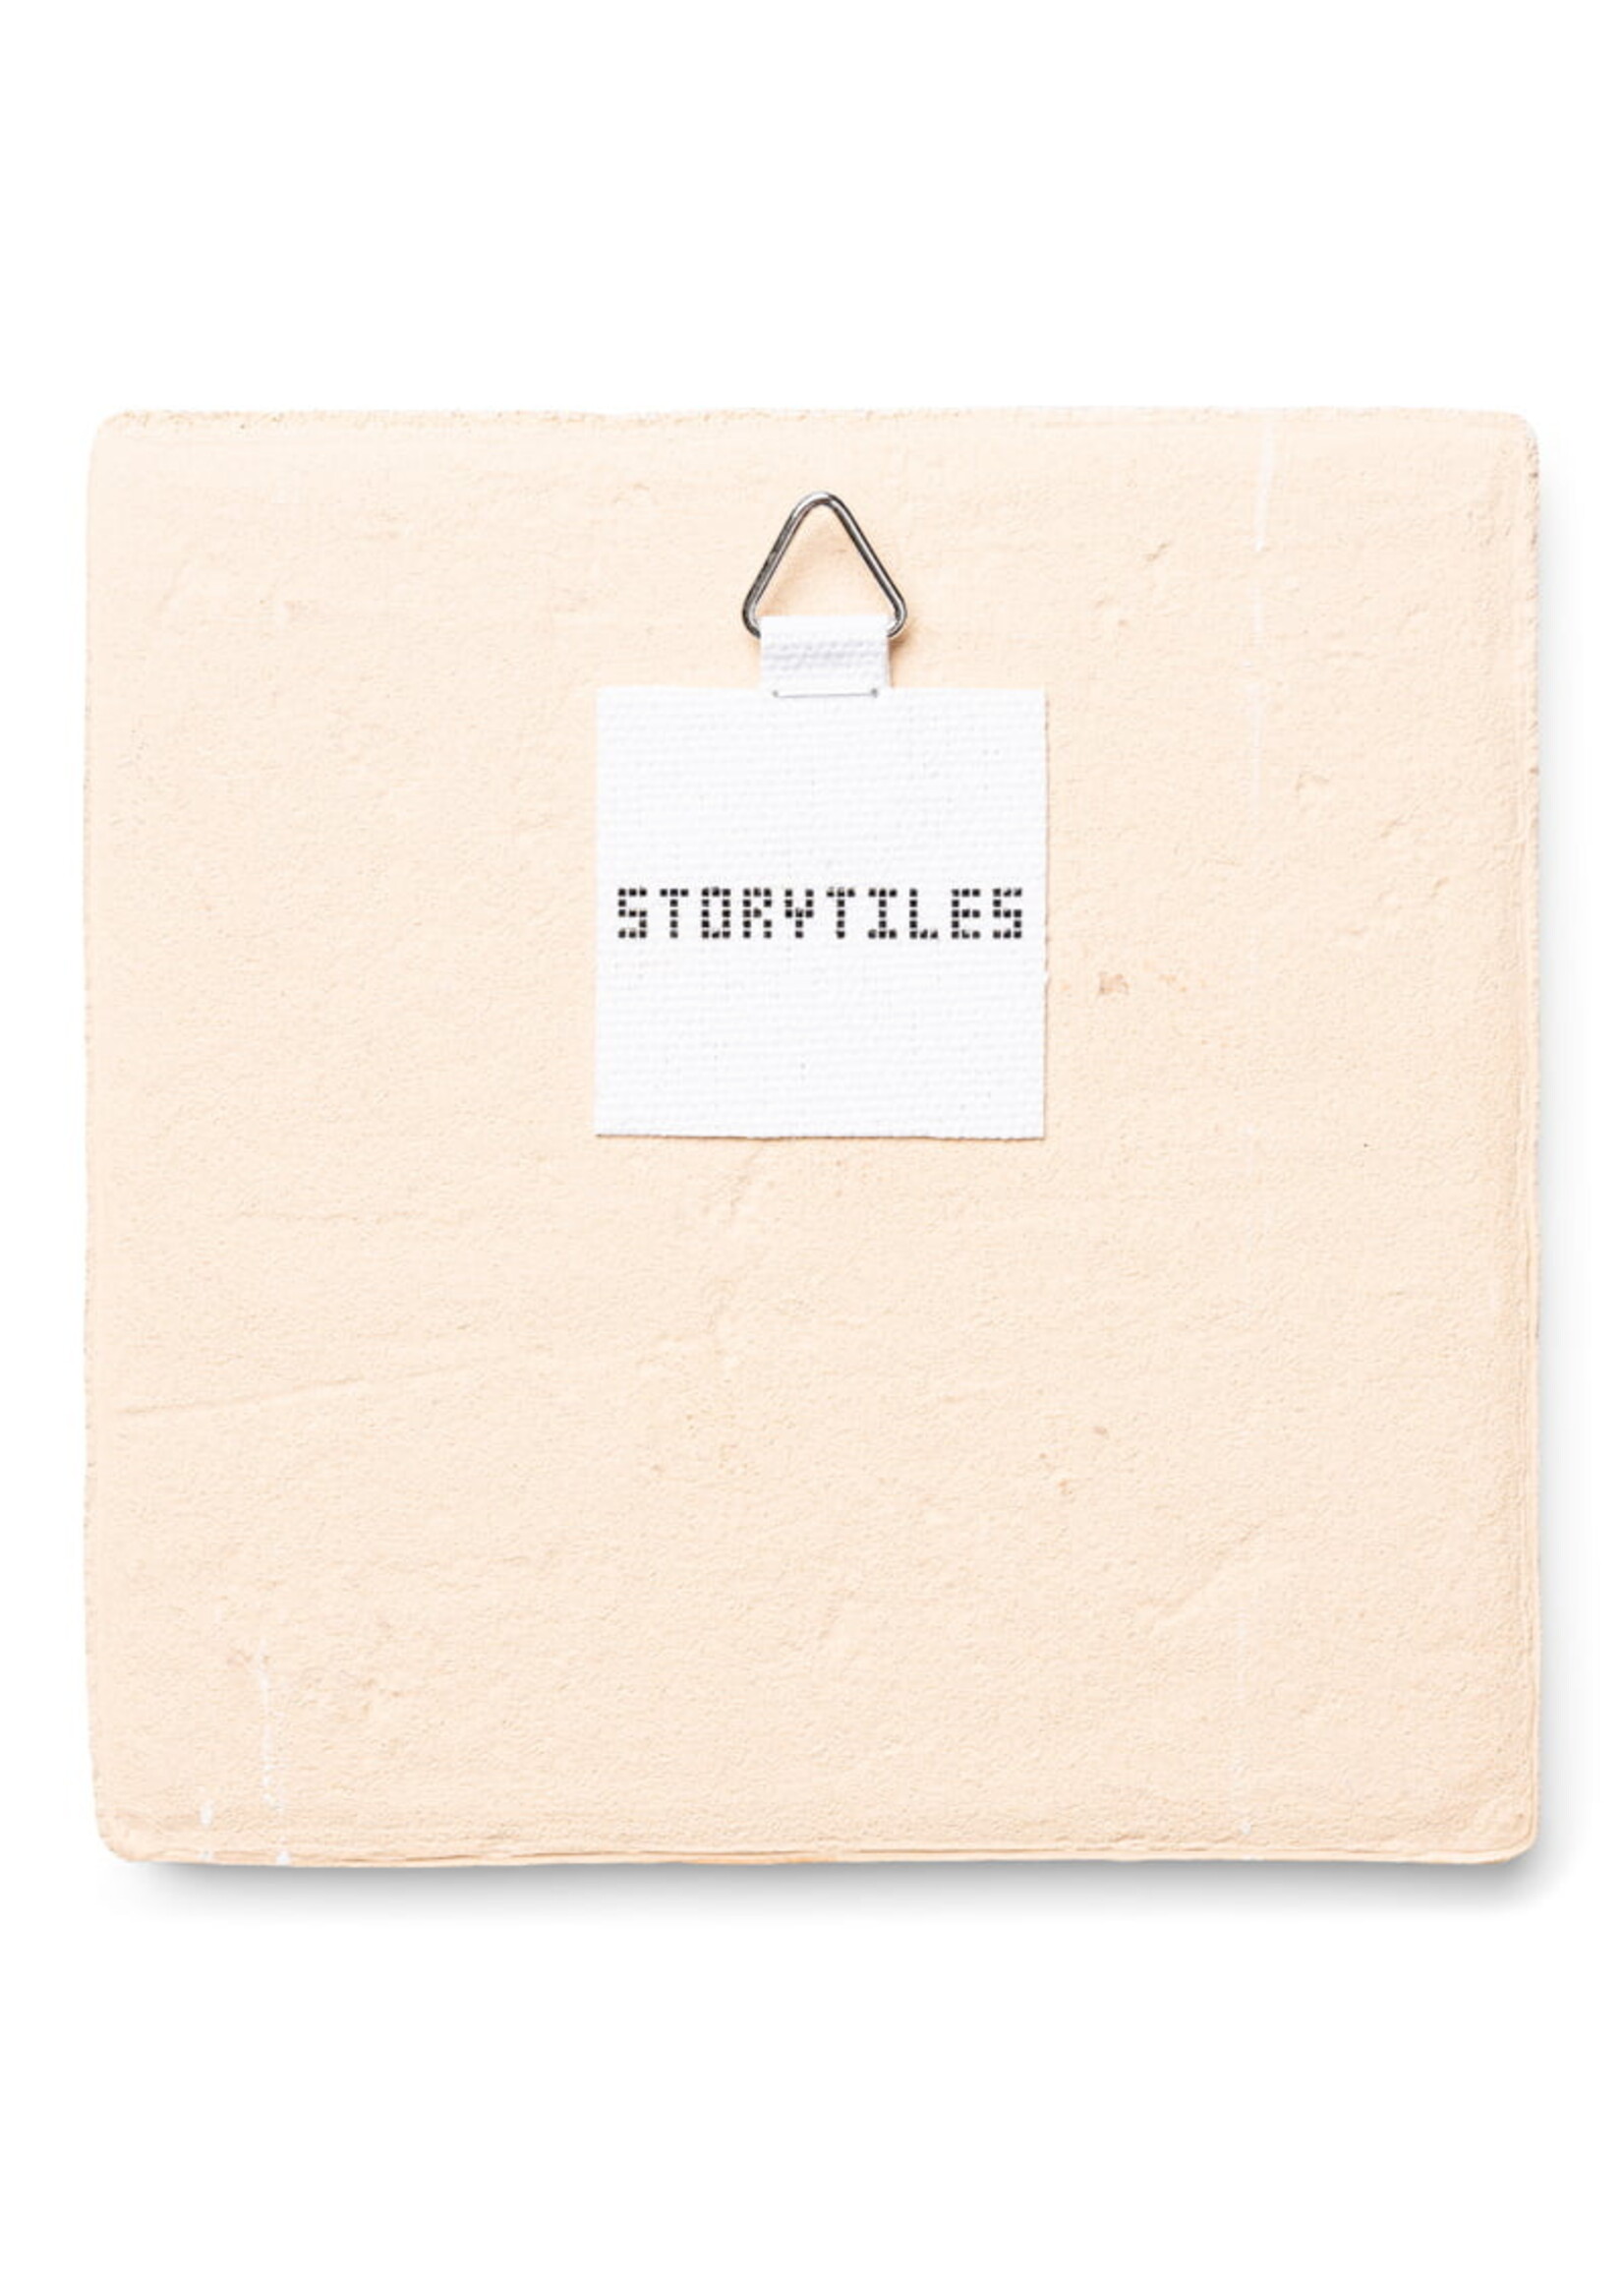 StoryTiles Bestemming in zicht